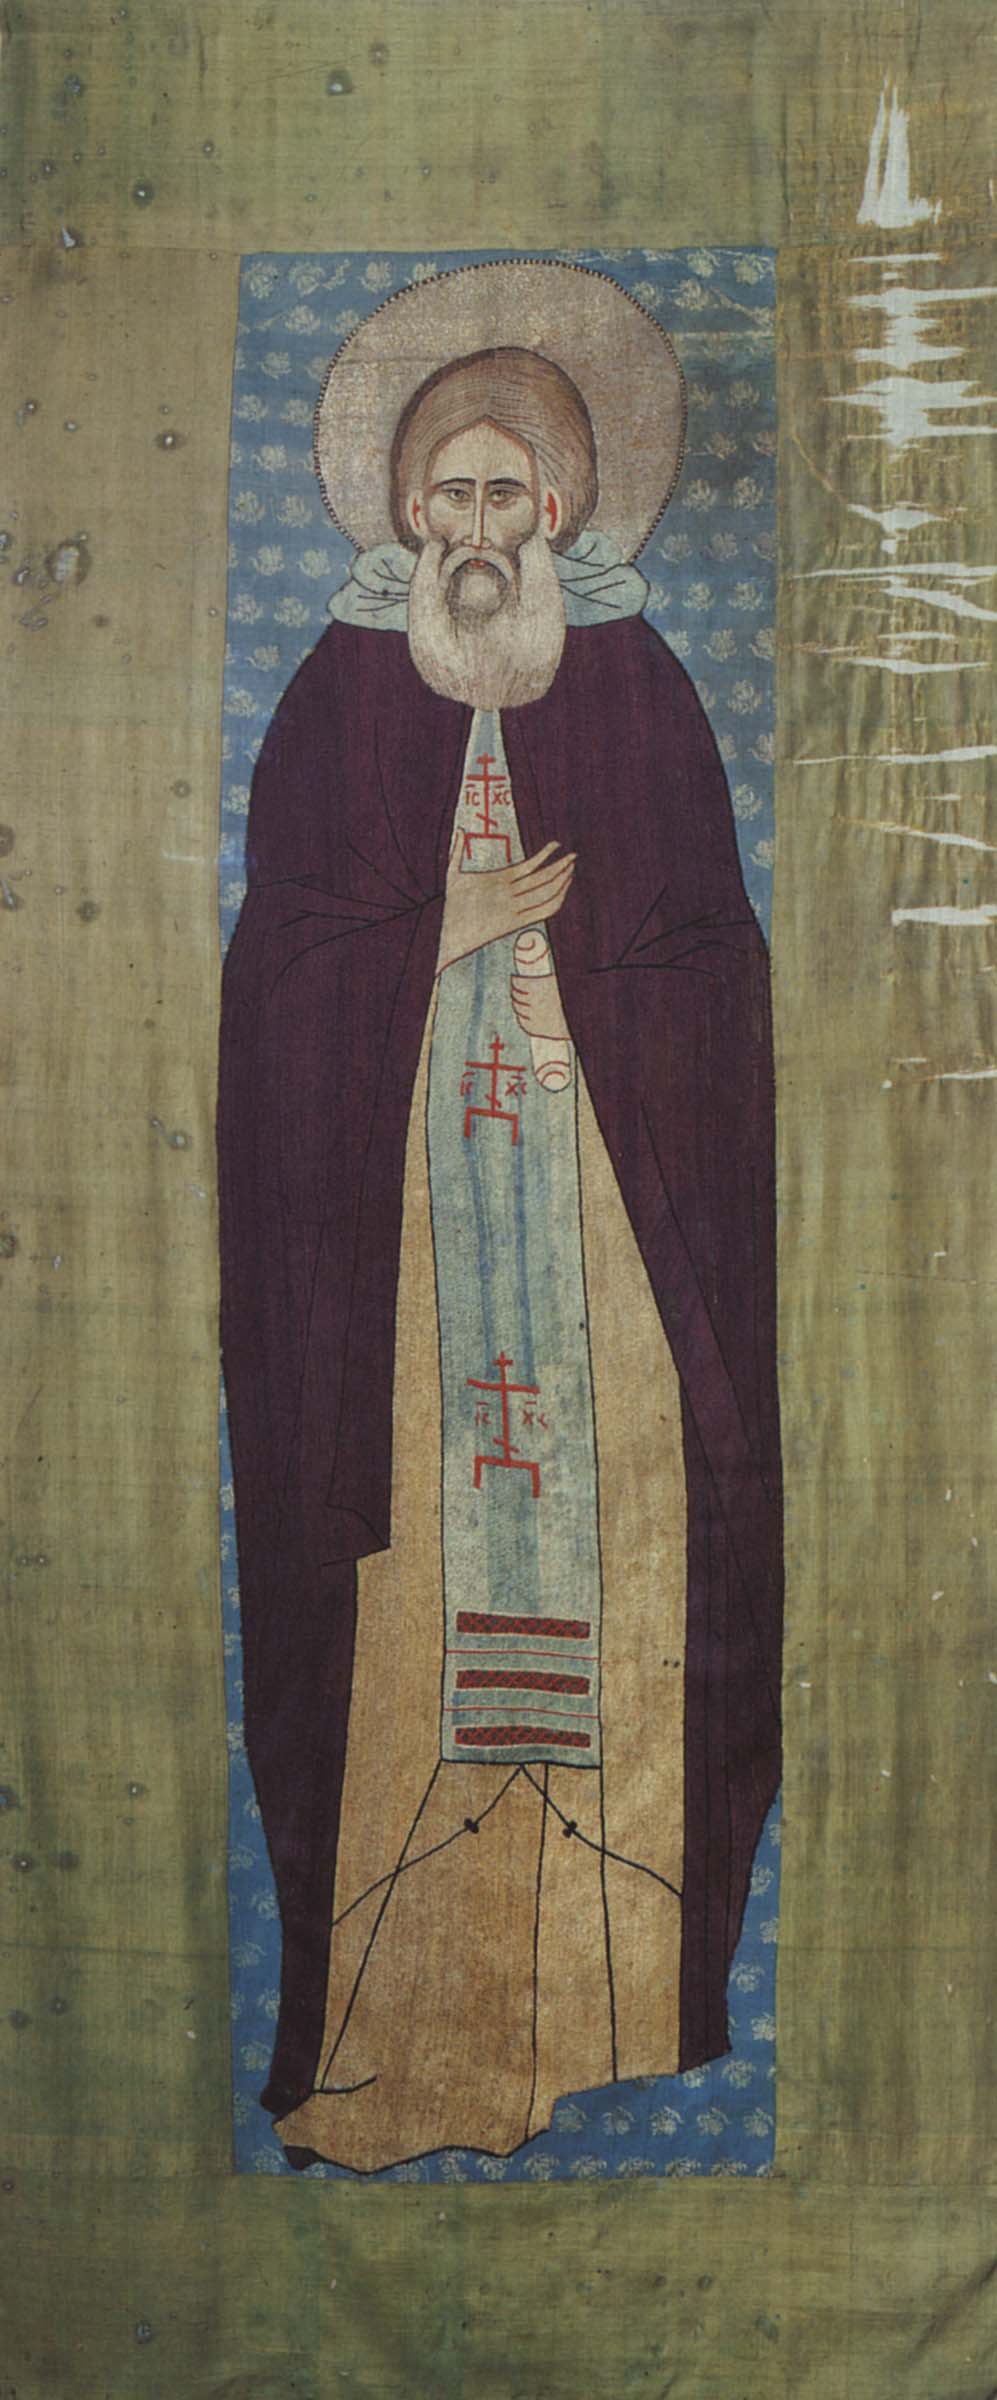 Преподобный Сергий Радонежский. Шитый покров, 1420-е годы. Ризница Троице - Сергиевой Лавры